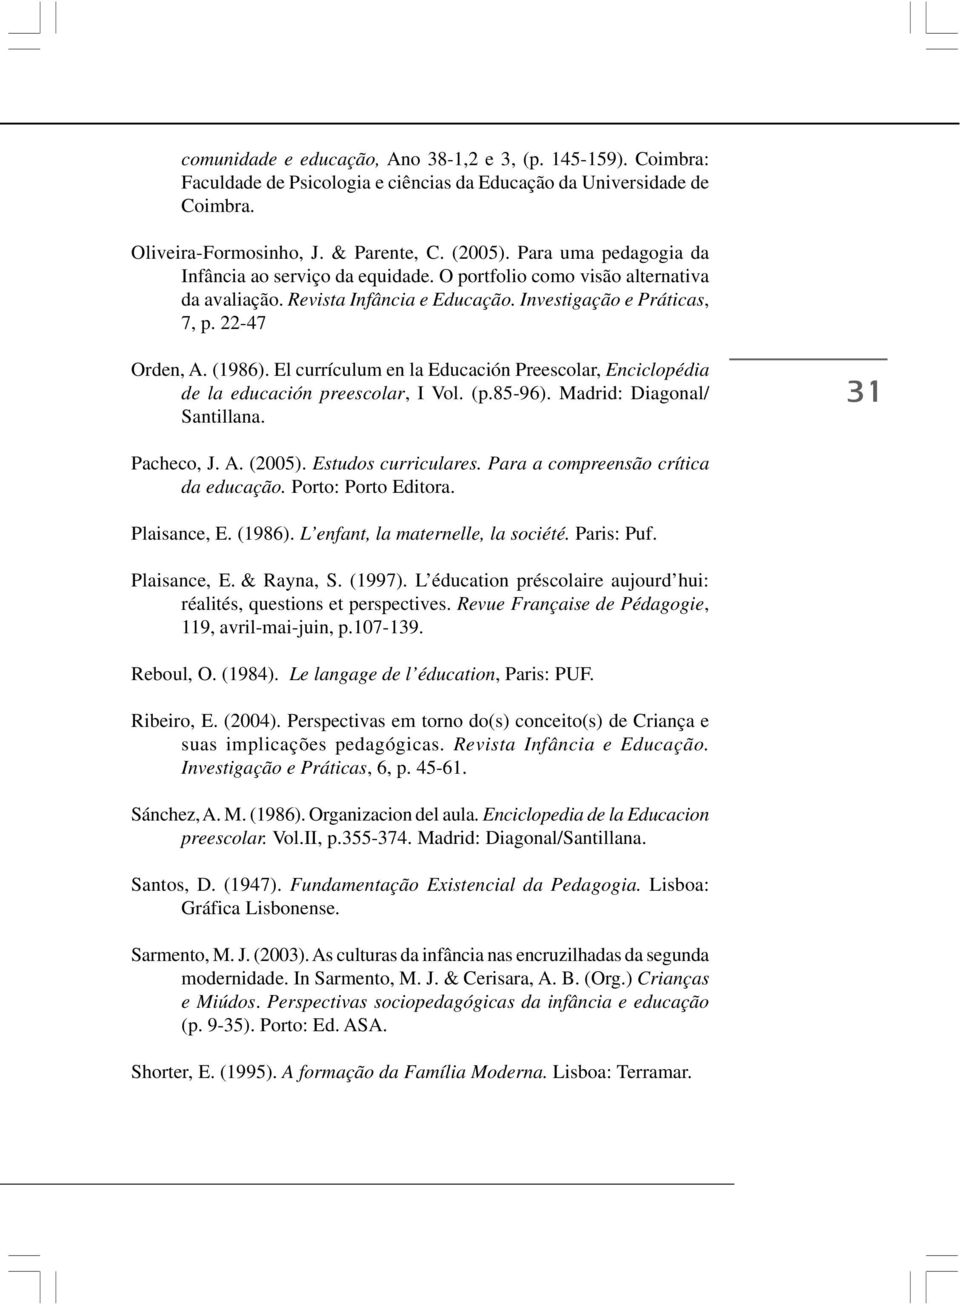 El currículum en la Educación Preescolar, Enciclopédia de la educación preescolar, I Vol. (p.85-96). Madrid: Diagonal/ Santillana. 31 Pacheco, J. A. (2005). Estudos curriculares.